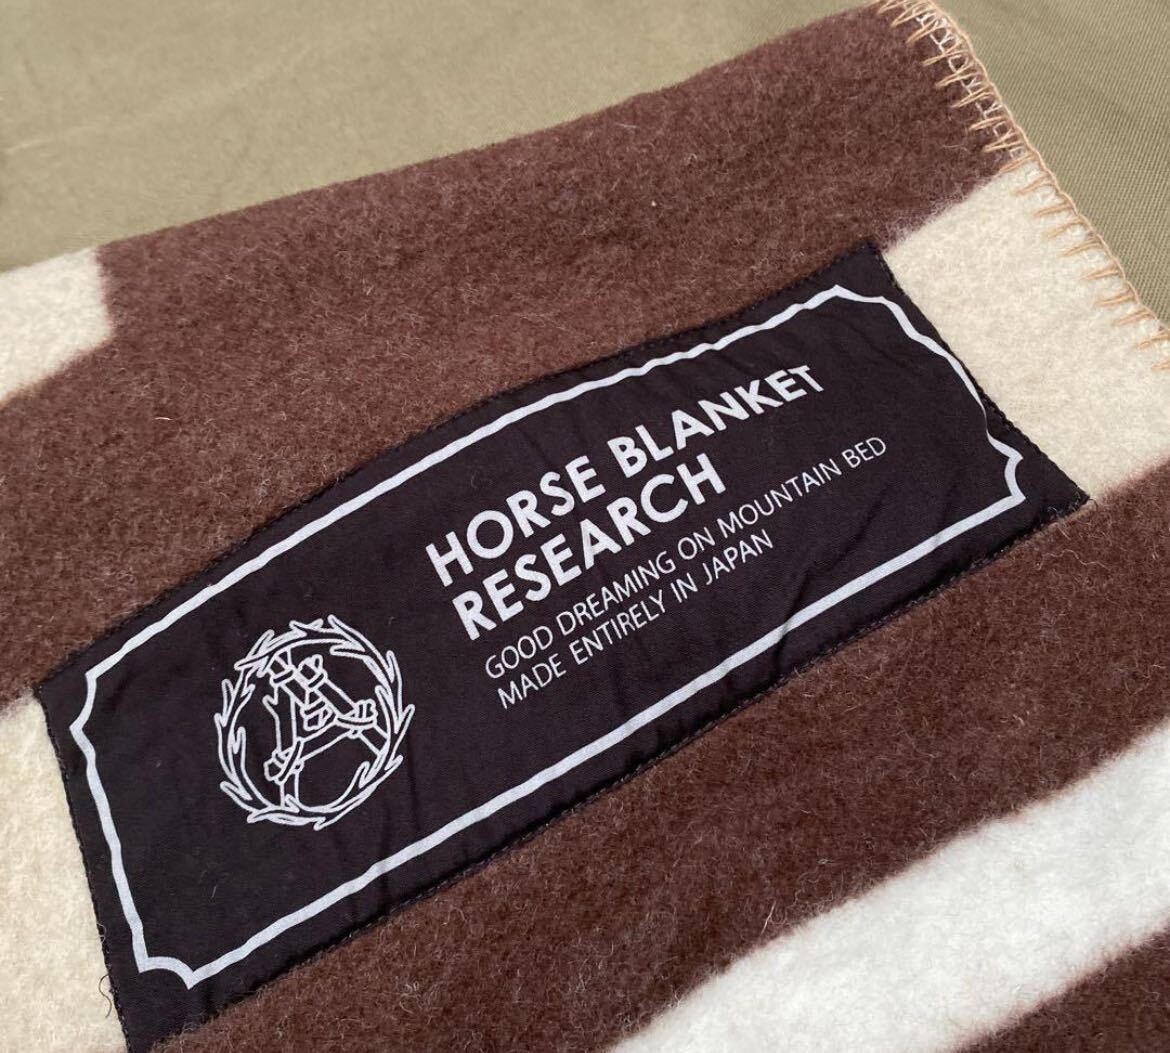 Horse Blanket Research マウンテンリサーチのブランケット1/2 ピンなし中古の画像4